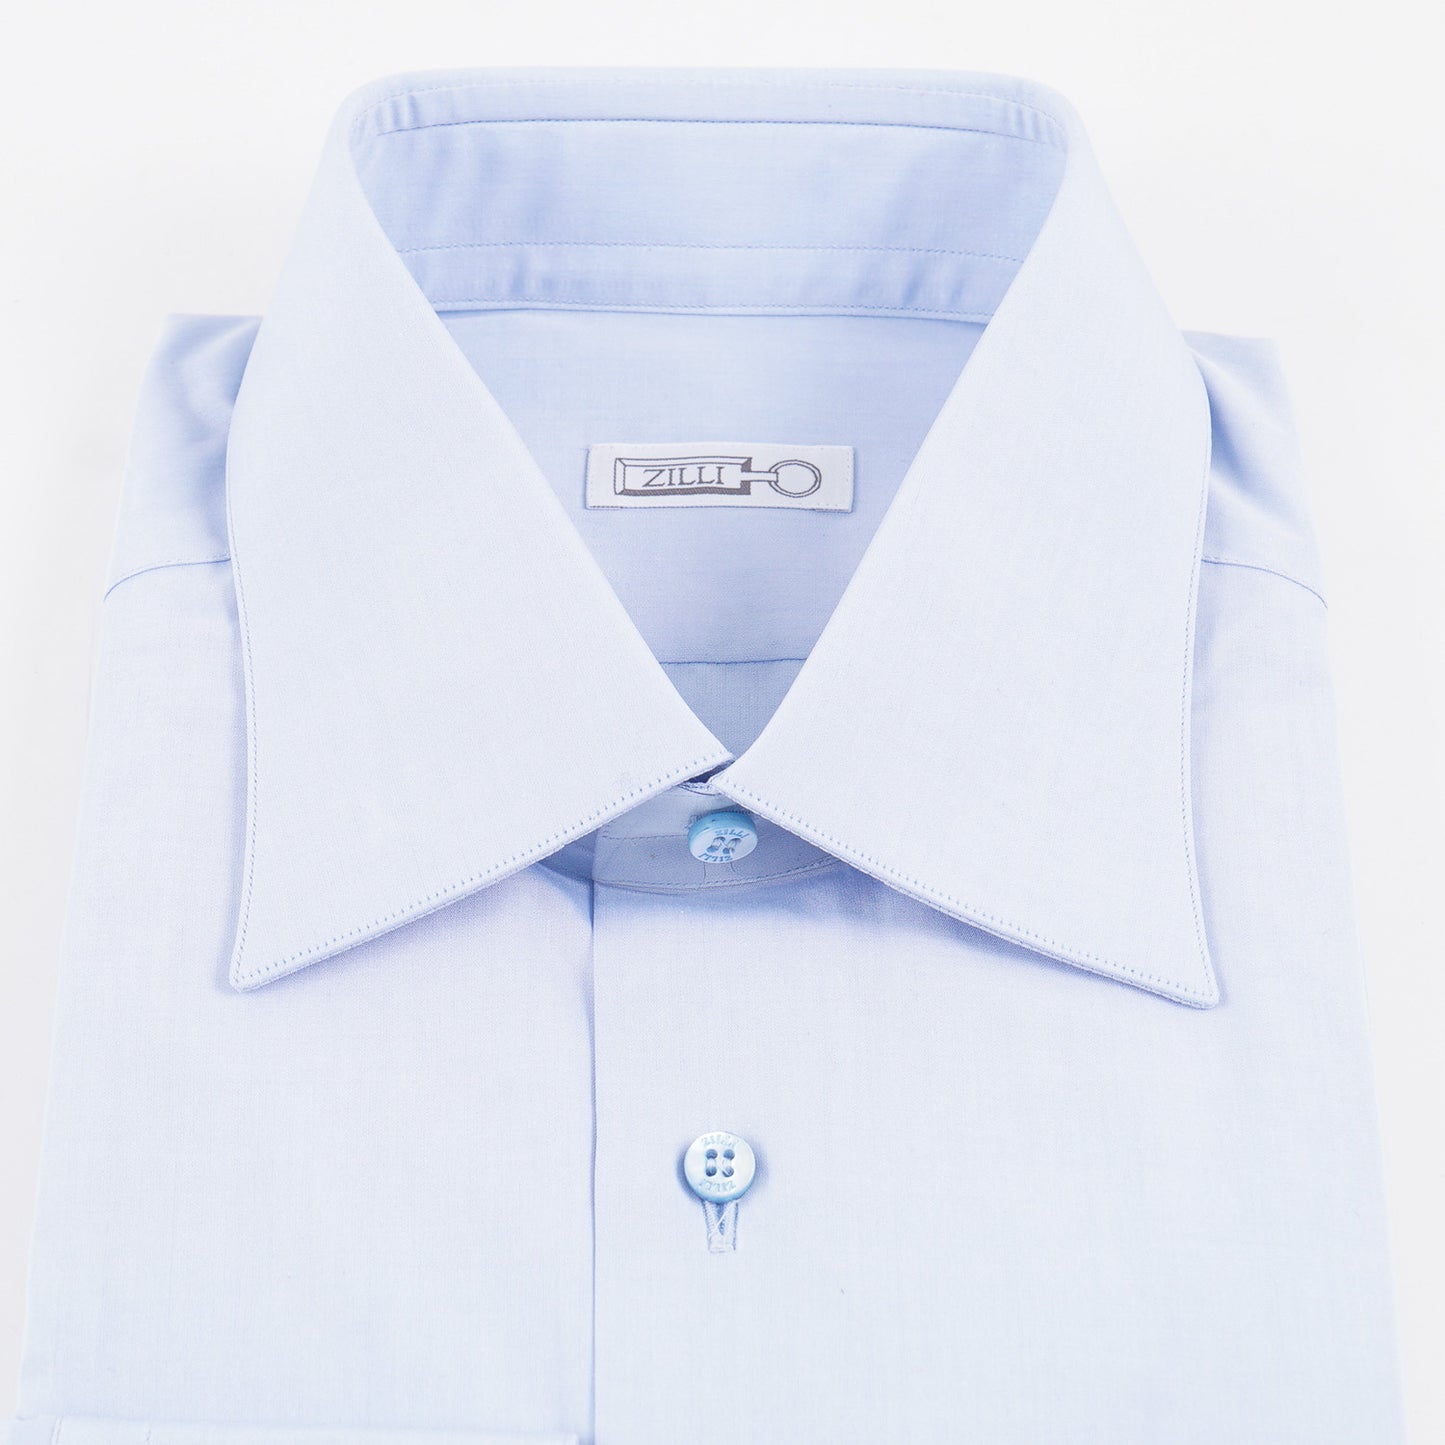 Zilli Sky Blue Cotton Dress Shirt - Top Shelf Apparel